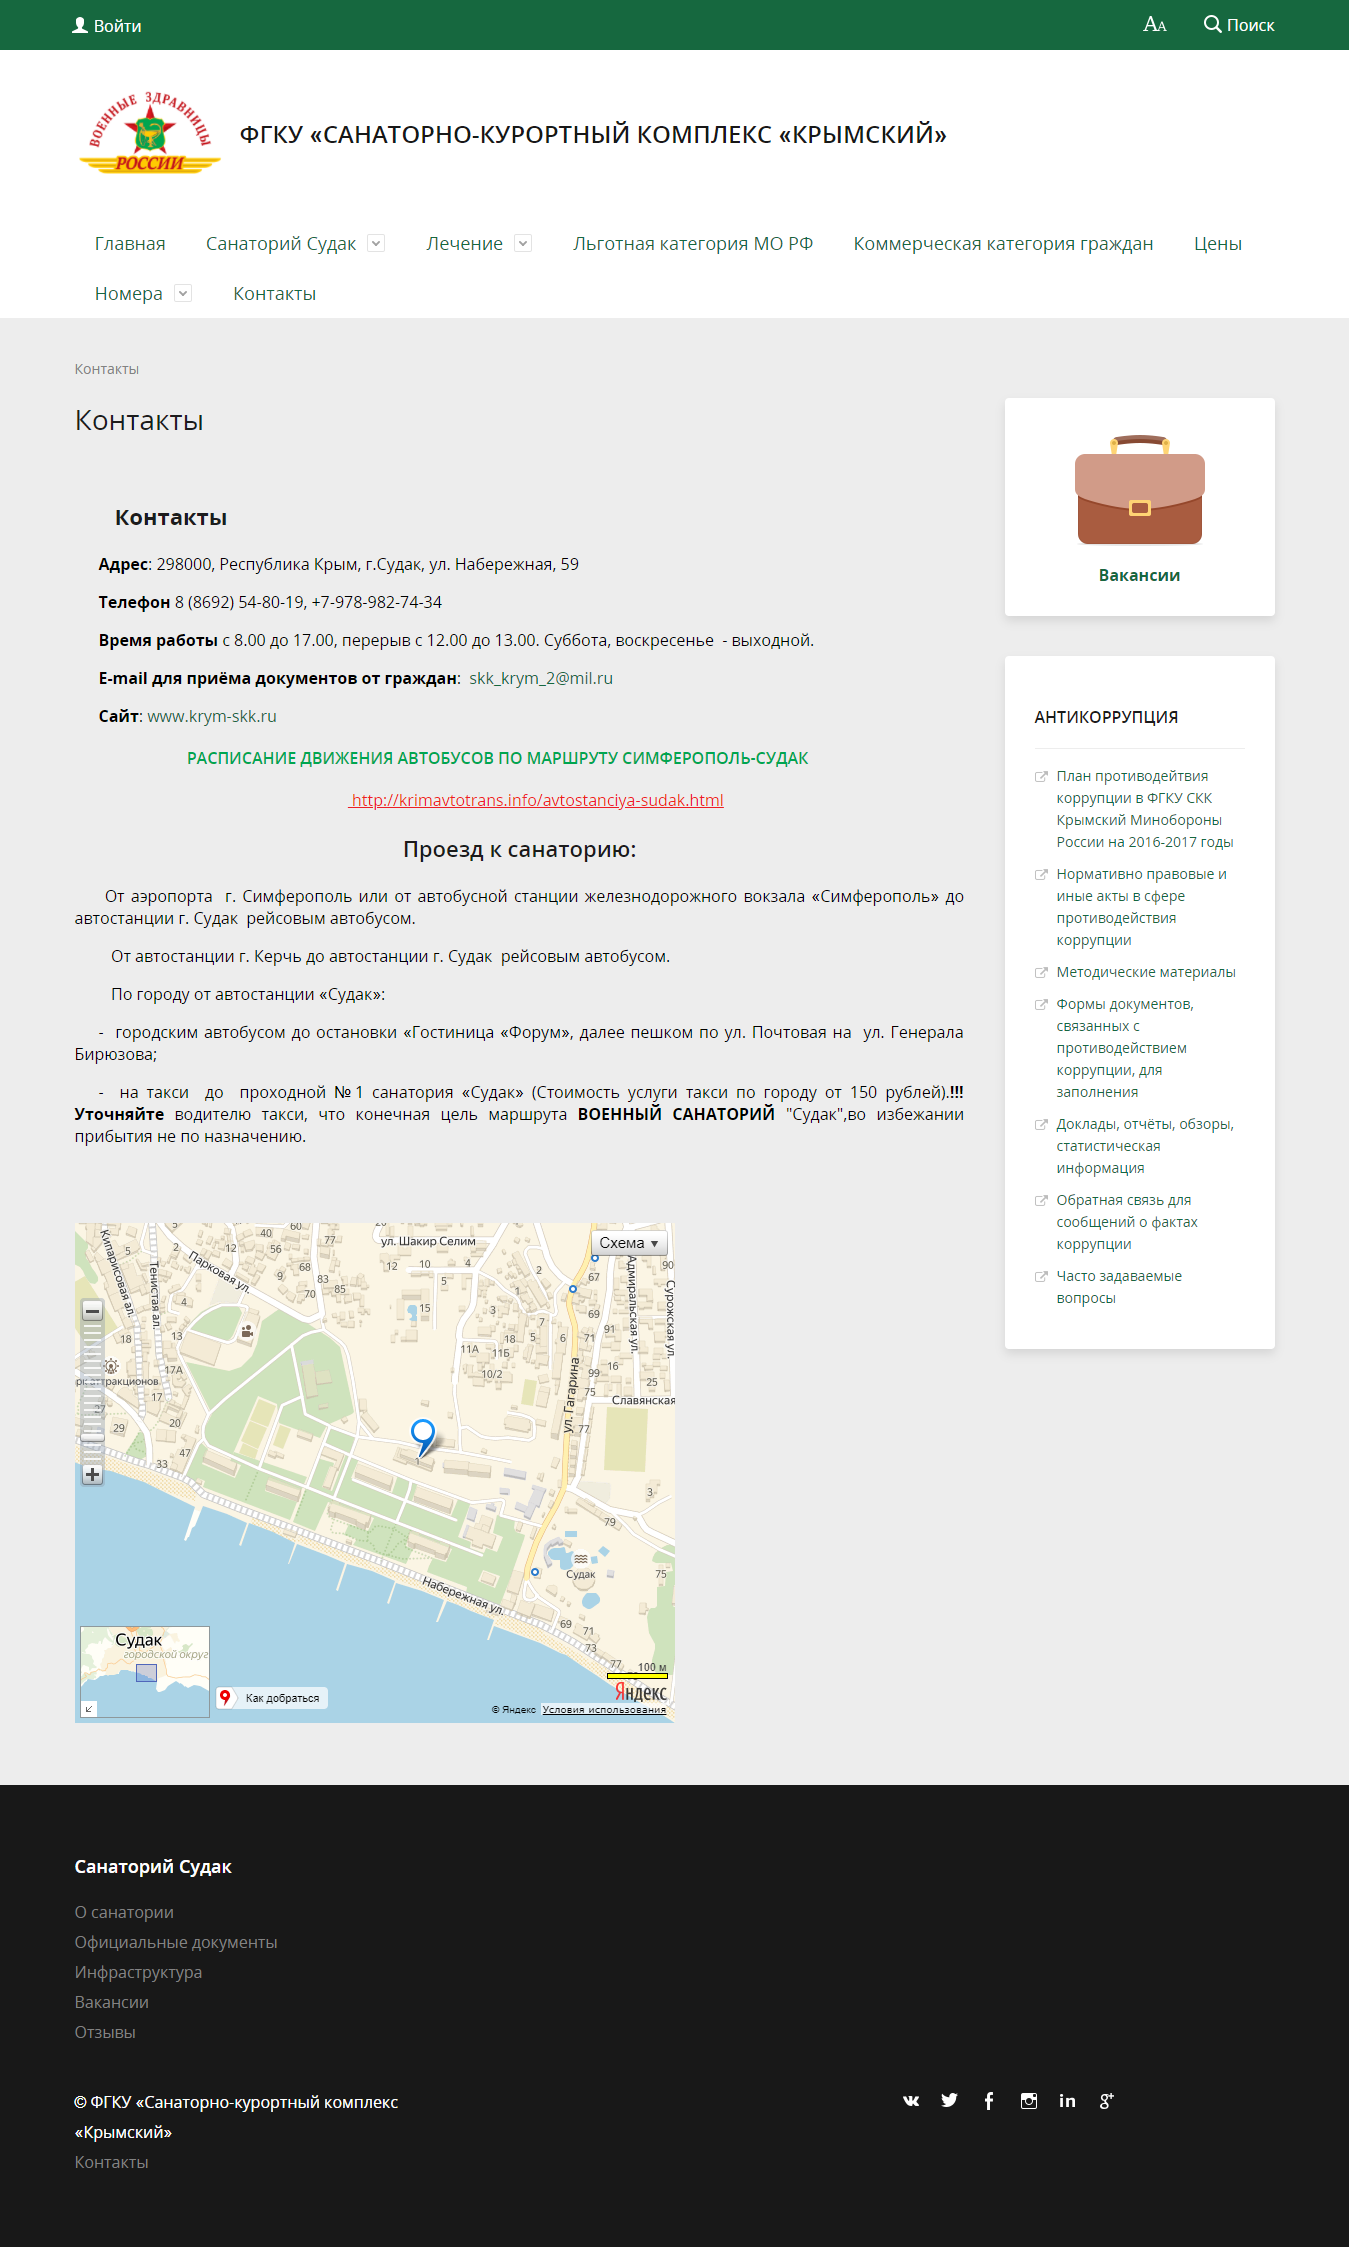 официальный сайт фгку "санаторно-курортный комплекс "крымский"